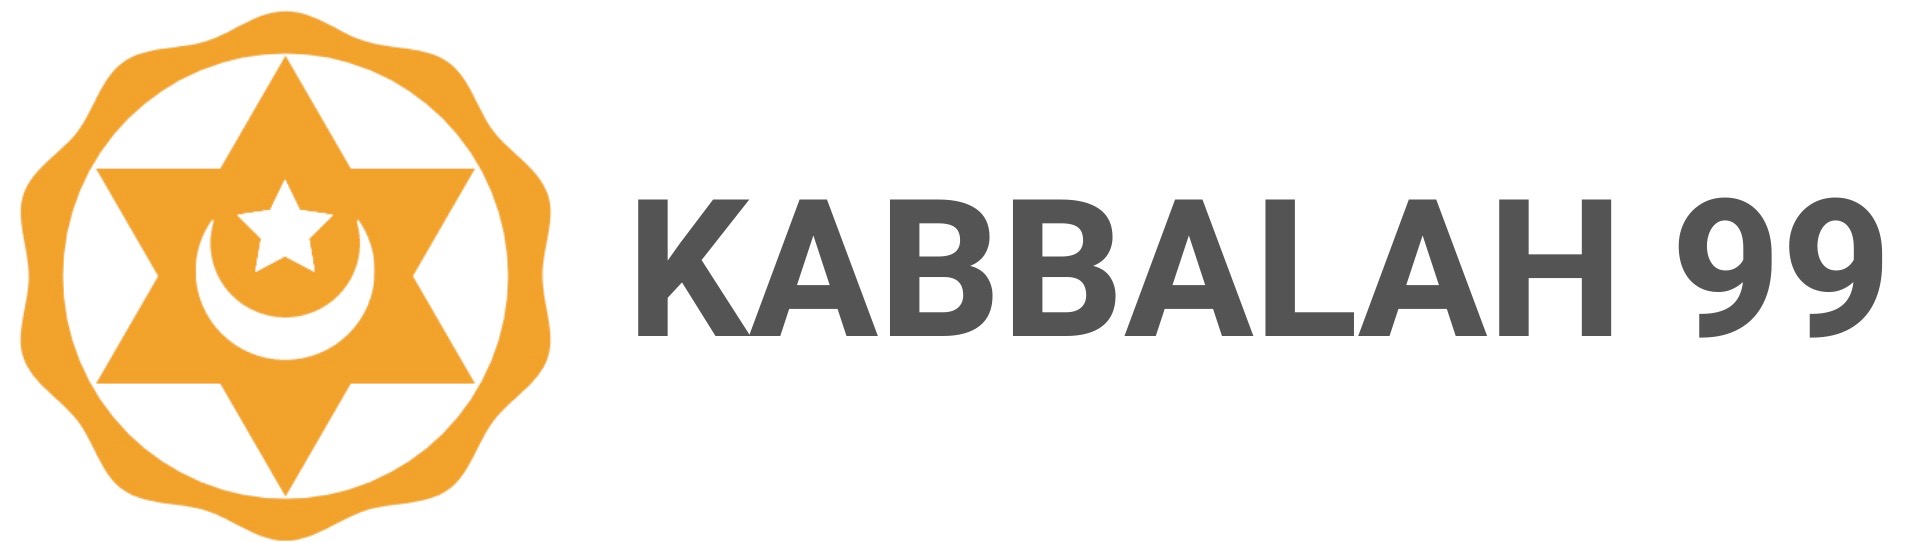 kabbalah99.com